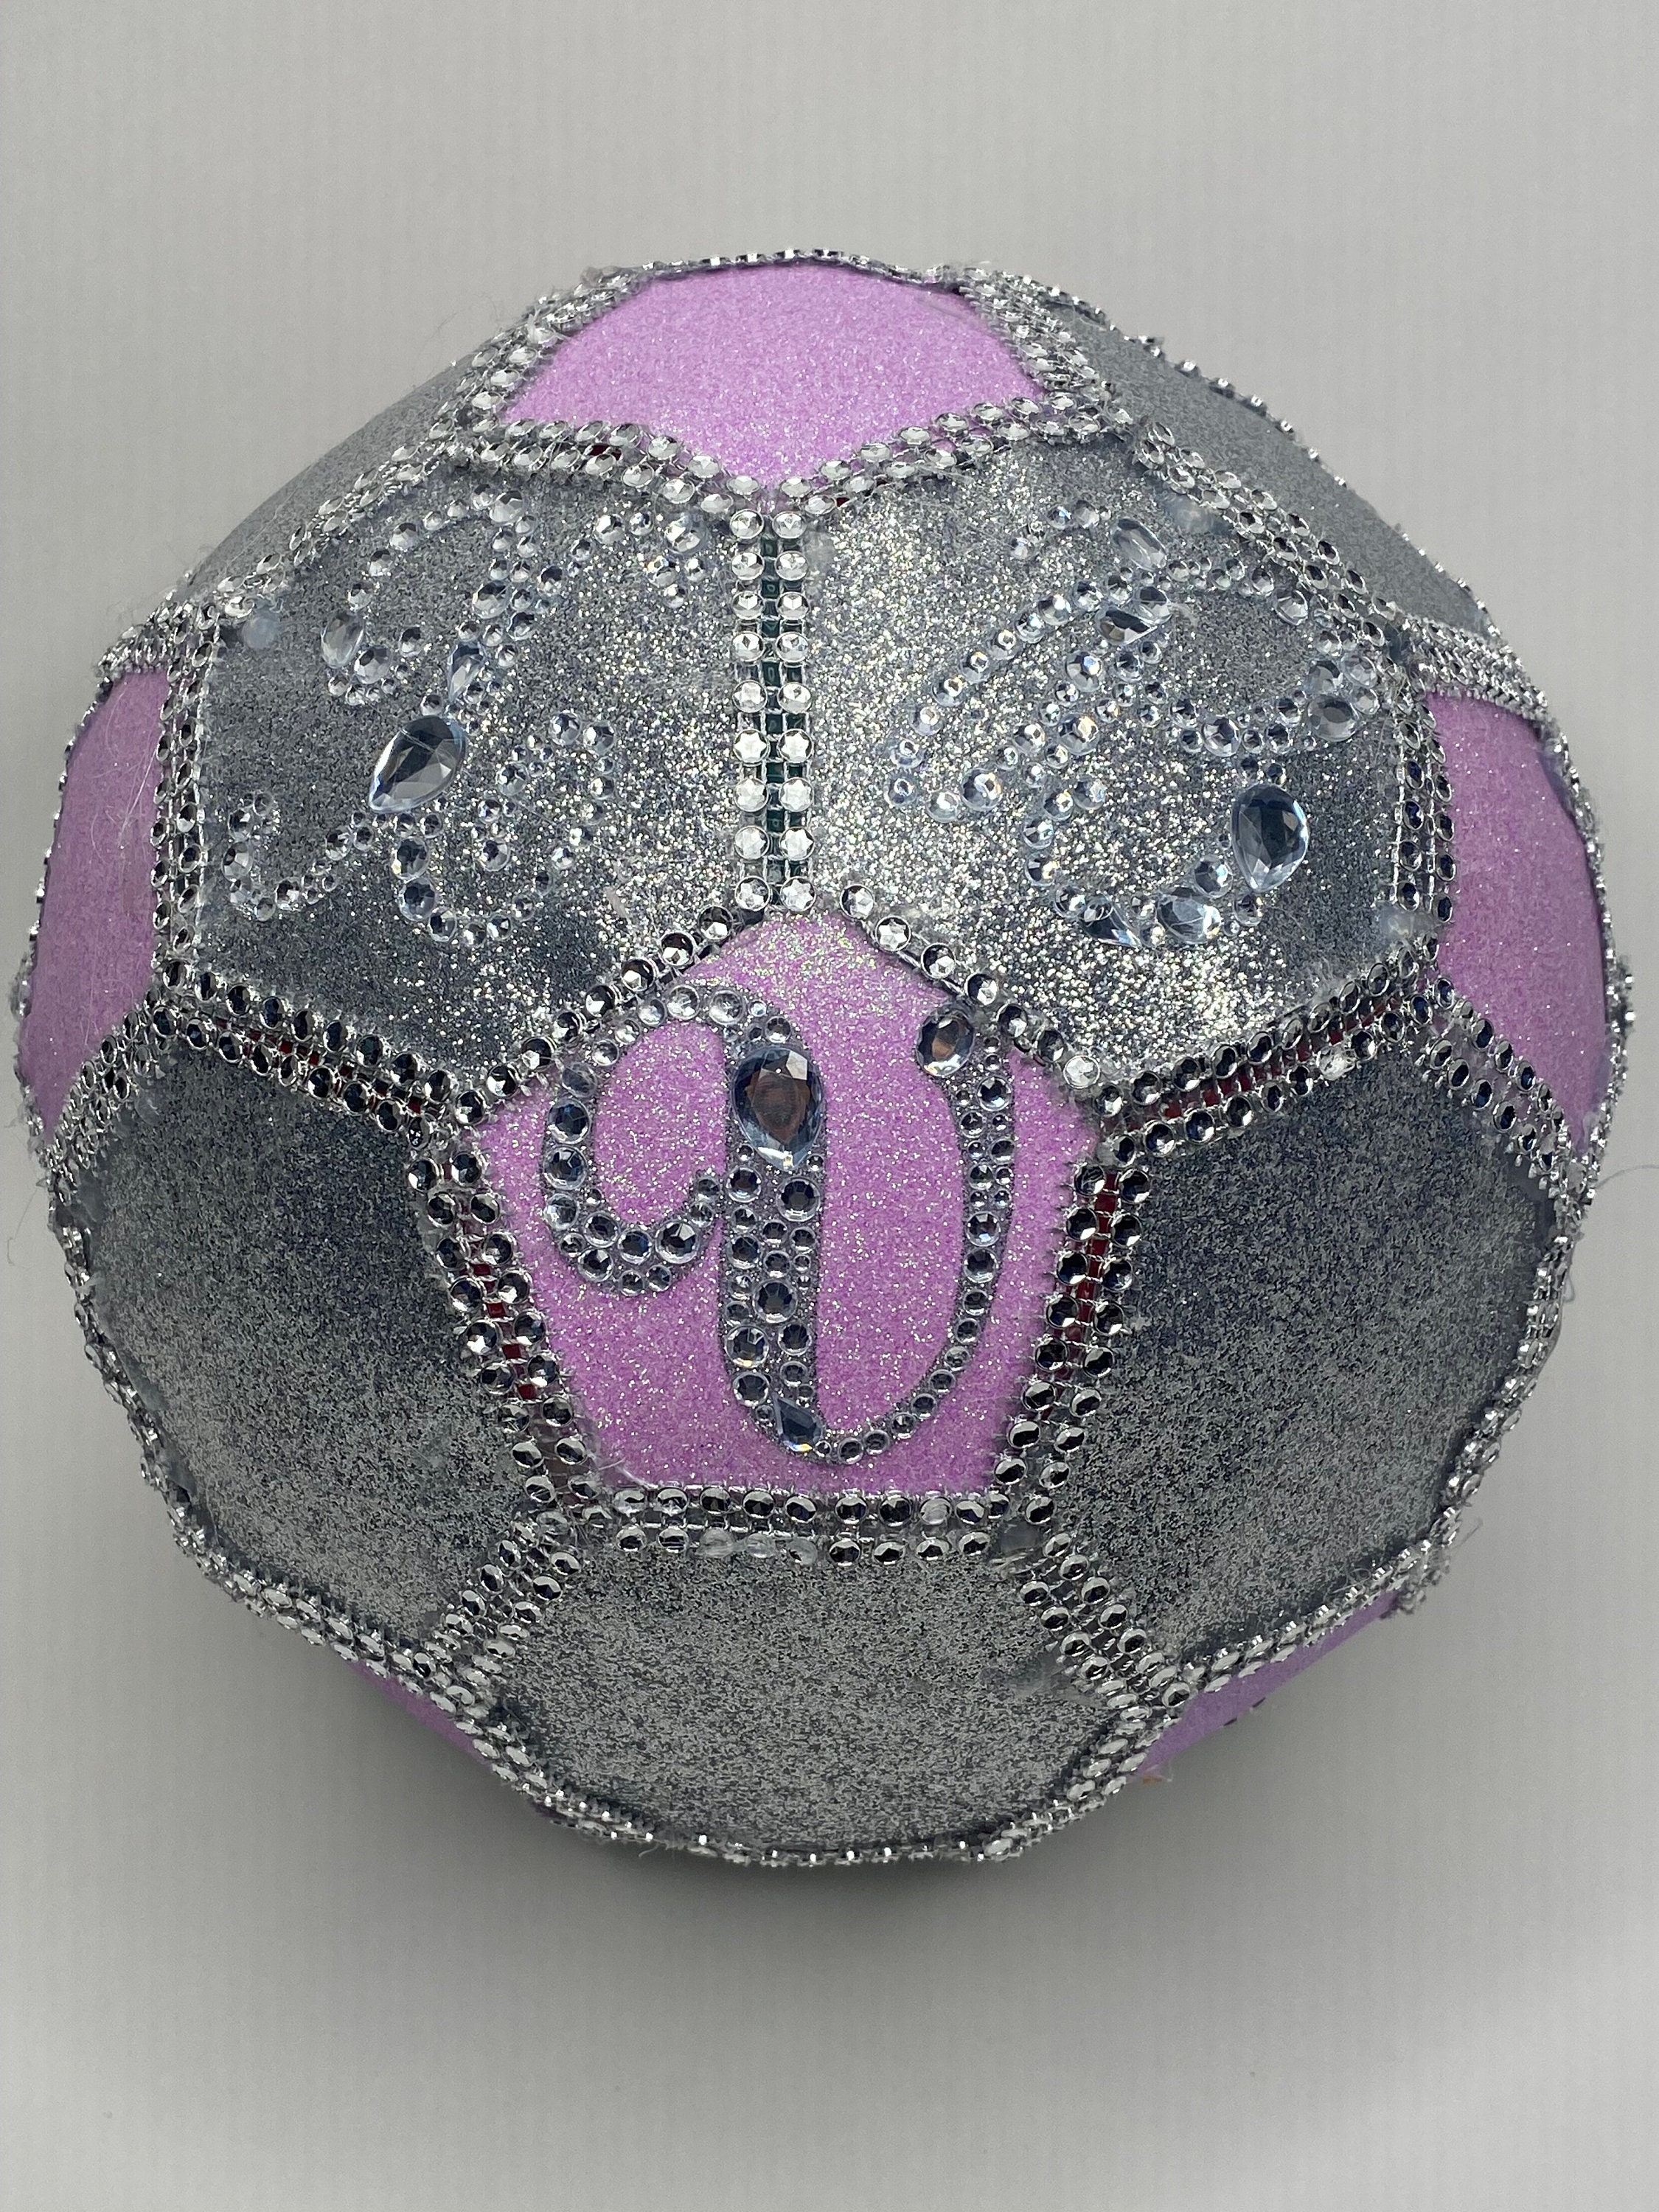 Bling, Sparkly, Shiny Things  Soccer ball, Soccer balls, Soccer